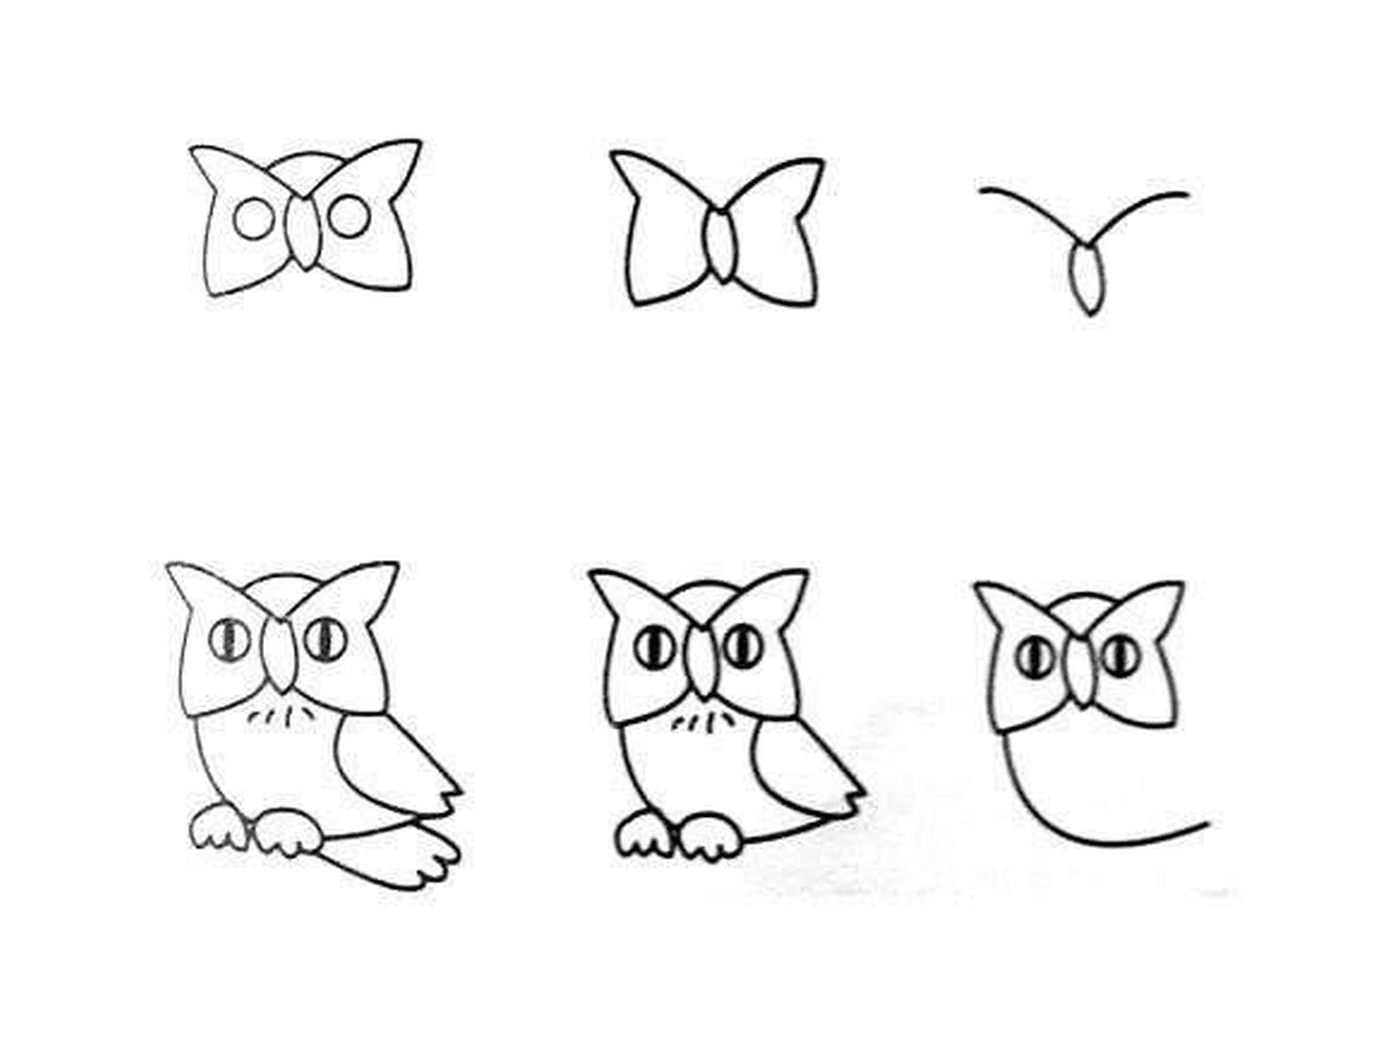  Como desenhar uma coruja facilmente 